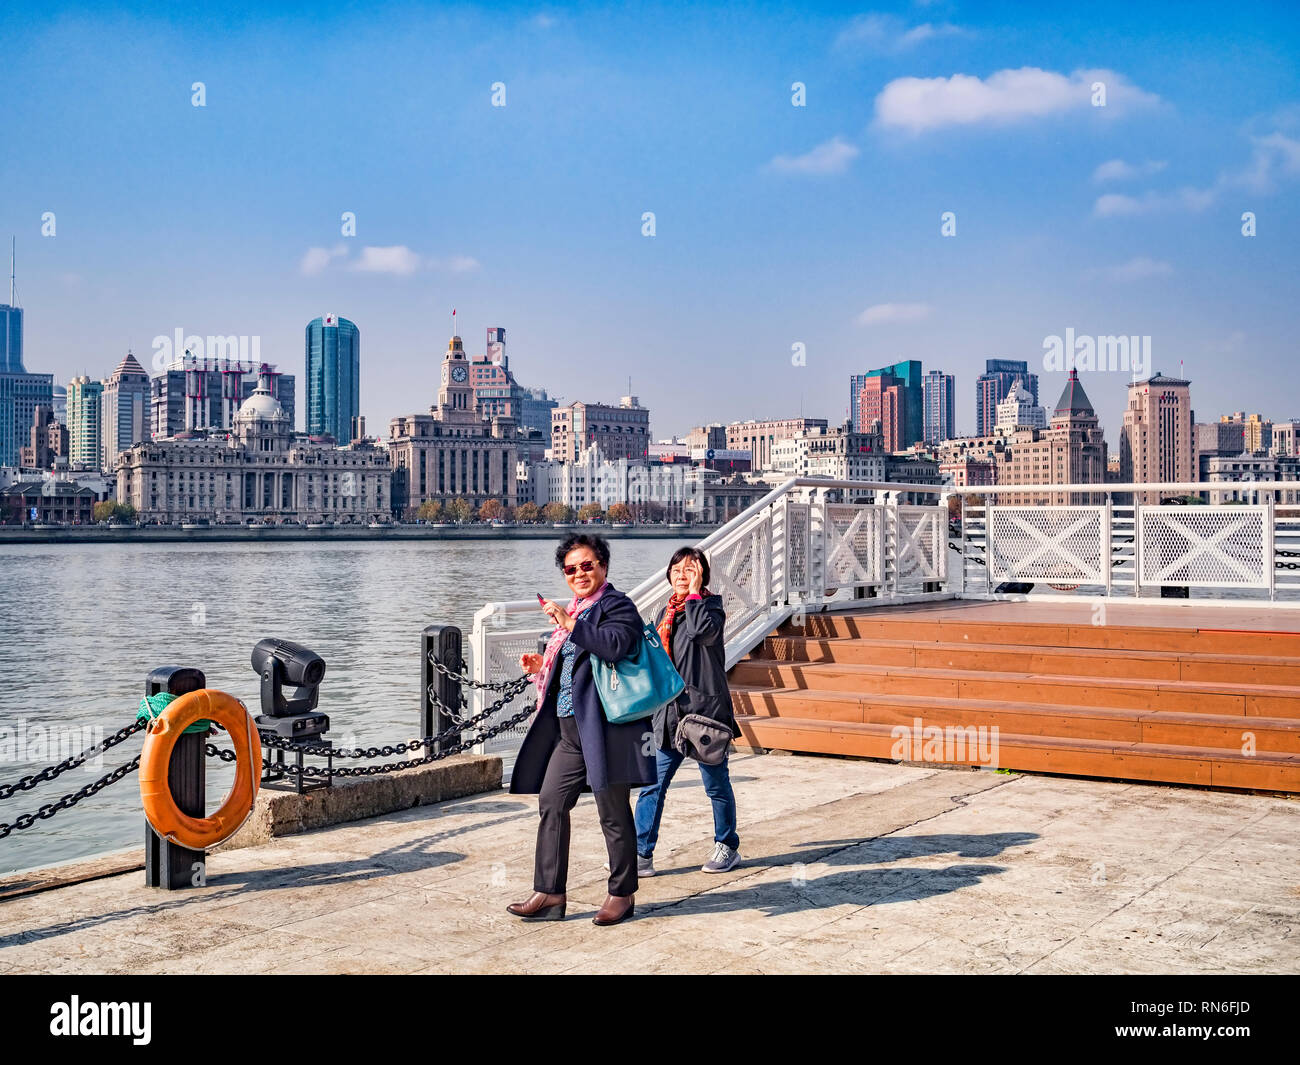 1. Dezember 2018: Shanghai, China - Besucher wandern am Ufer des Huangpu Fluss auf der Pudong Seite, gegenüber dem Bund, Shanghai. Stockfoto